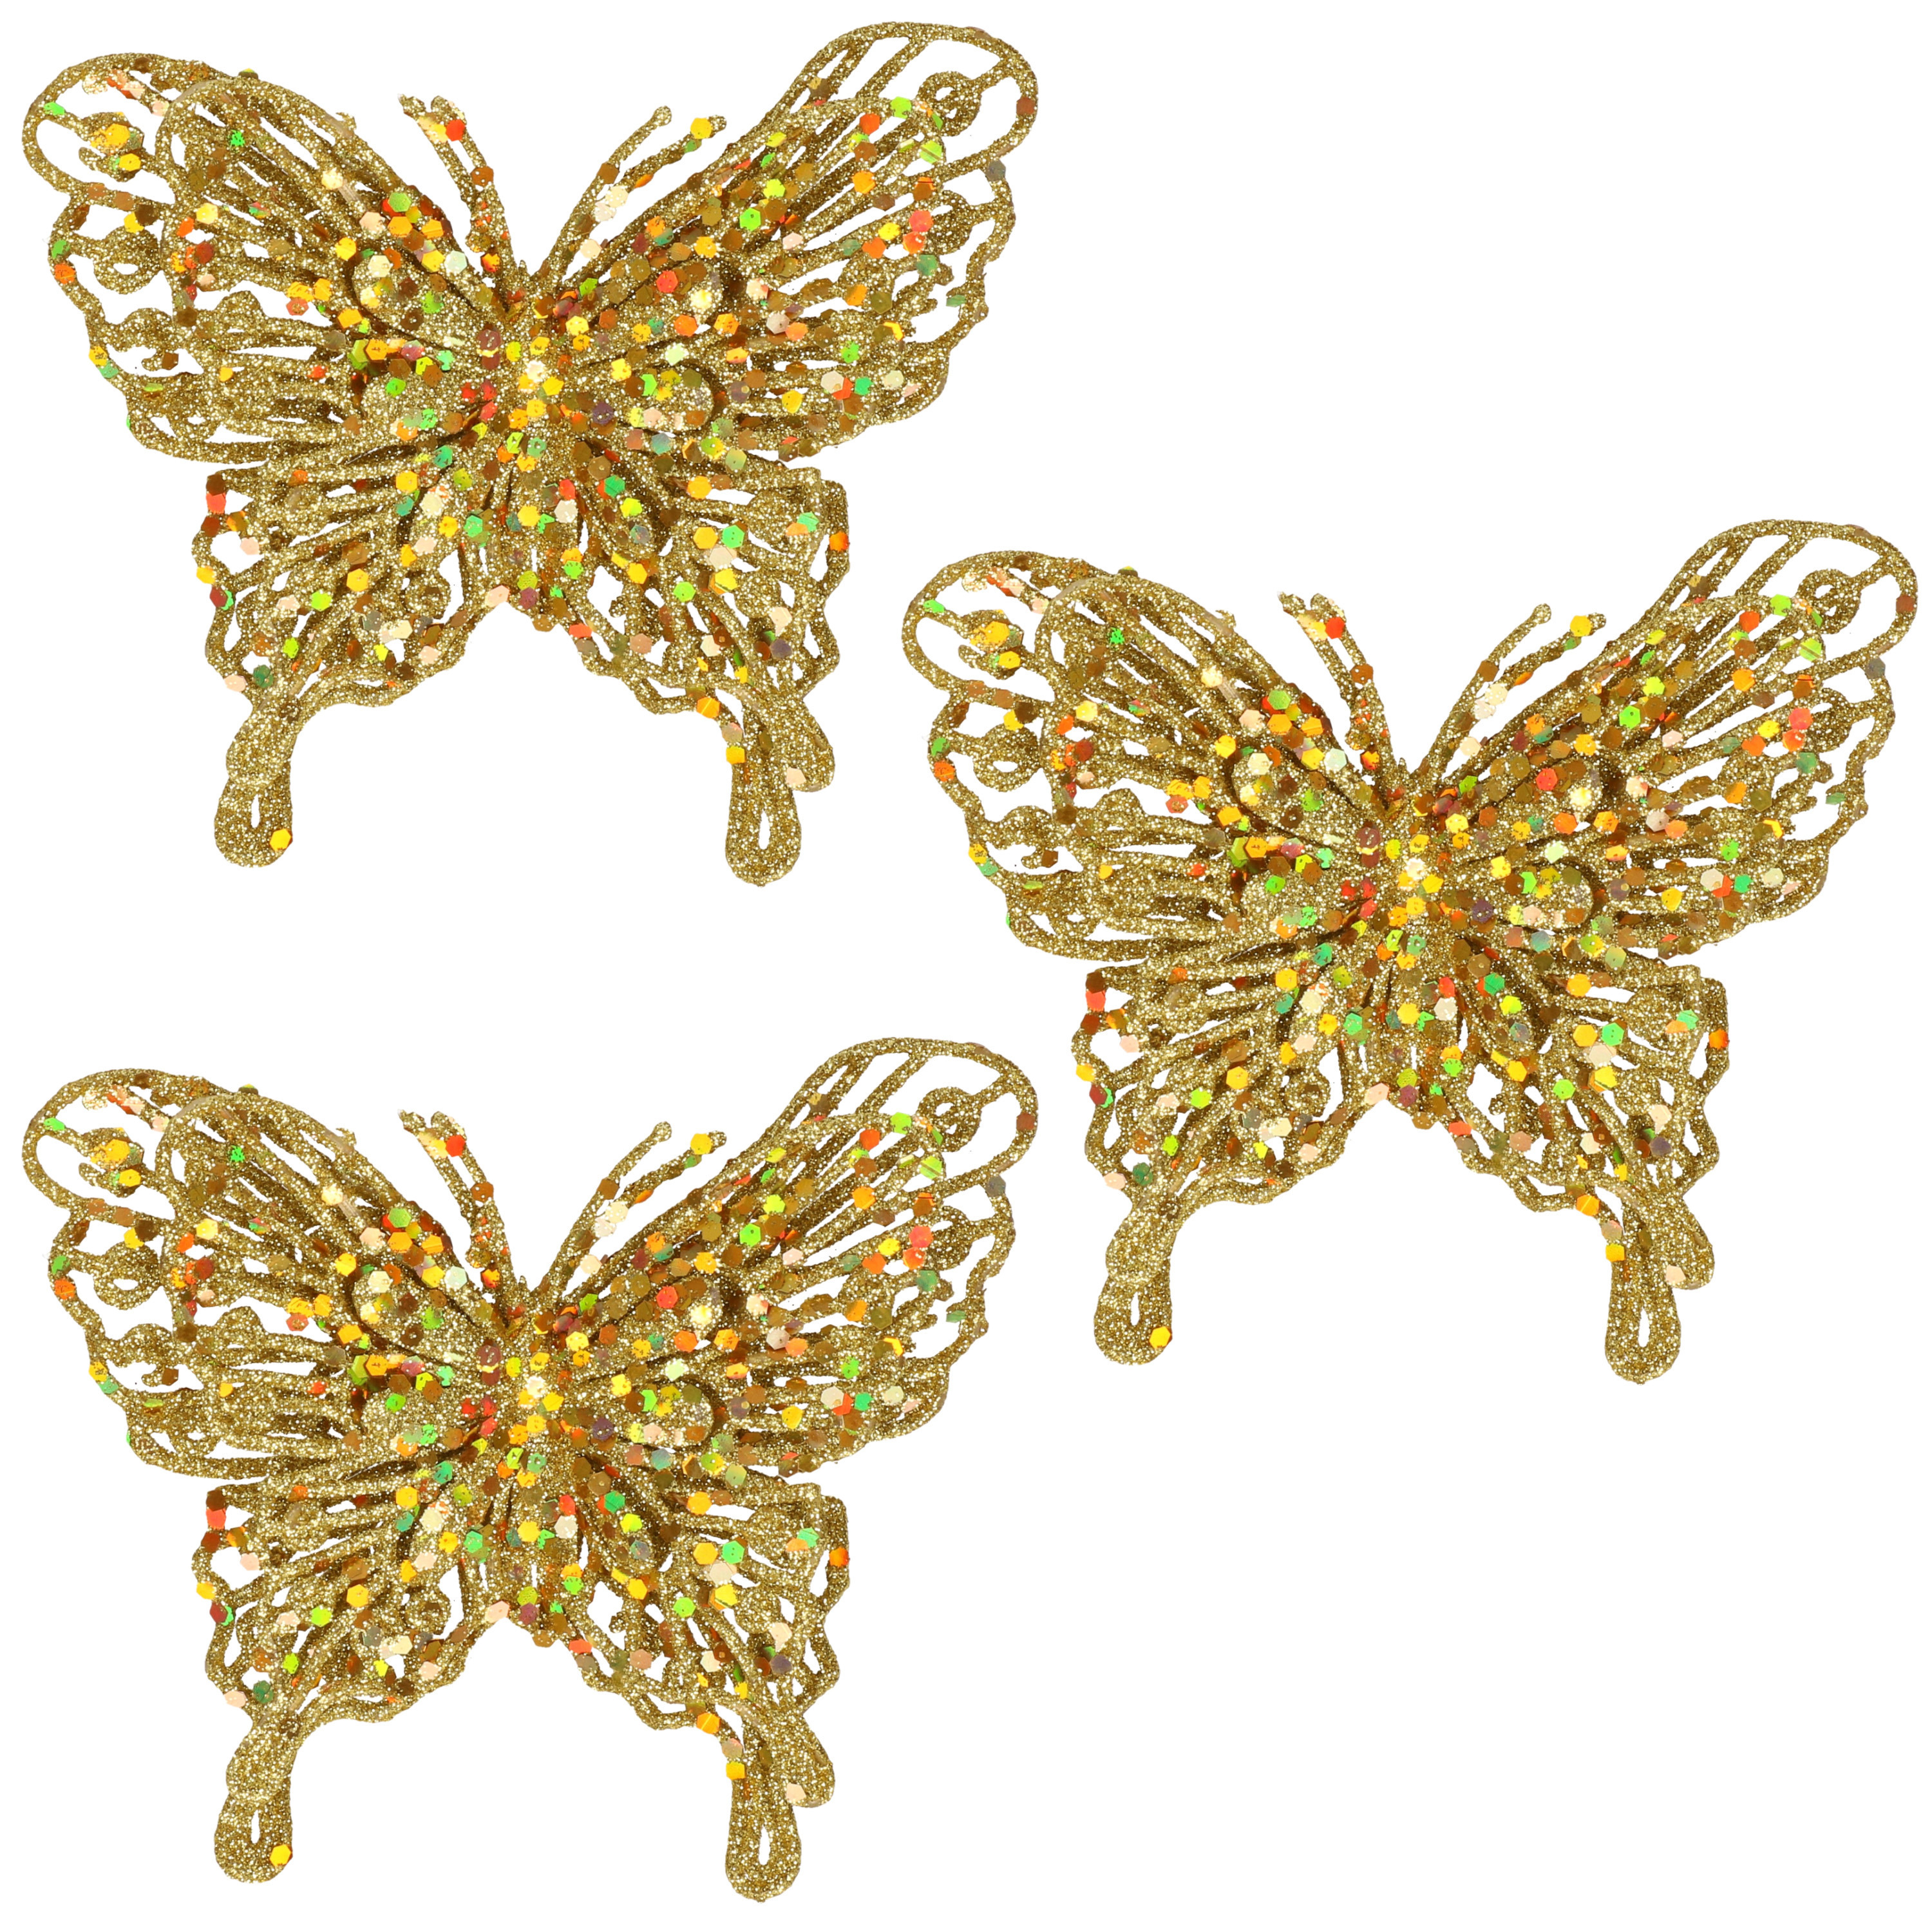 6x Kerst decoratie vlinders goud 12 x 11 cm